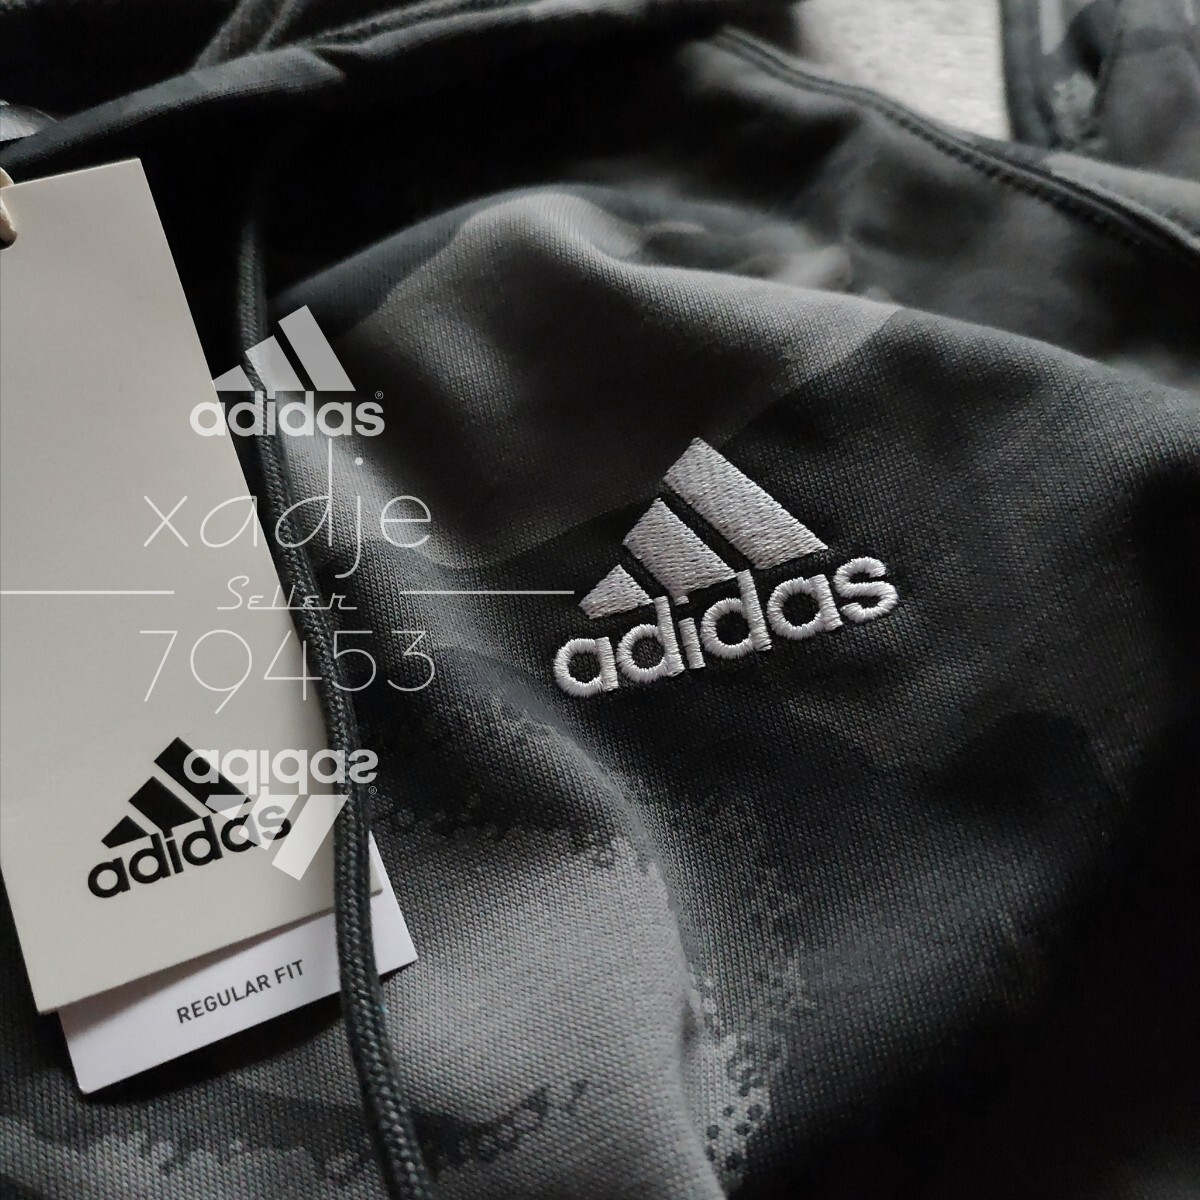 新品 正規品 adidas アディダス 上下セット スウェット セットアップ カーキ オリーブ 茶 ブラック ロゴ刺繍 総柄 迷彩 薄手 上 2XL 下 XL_画像3